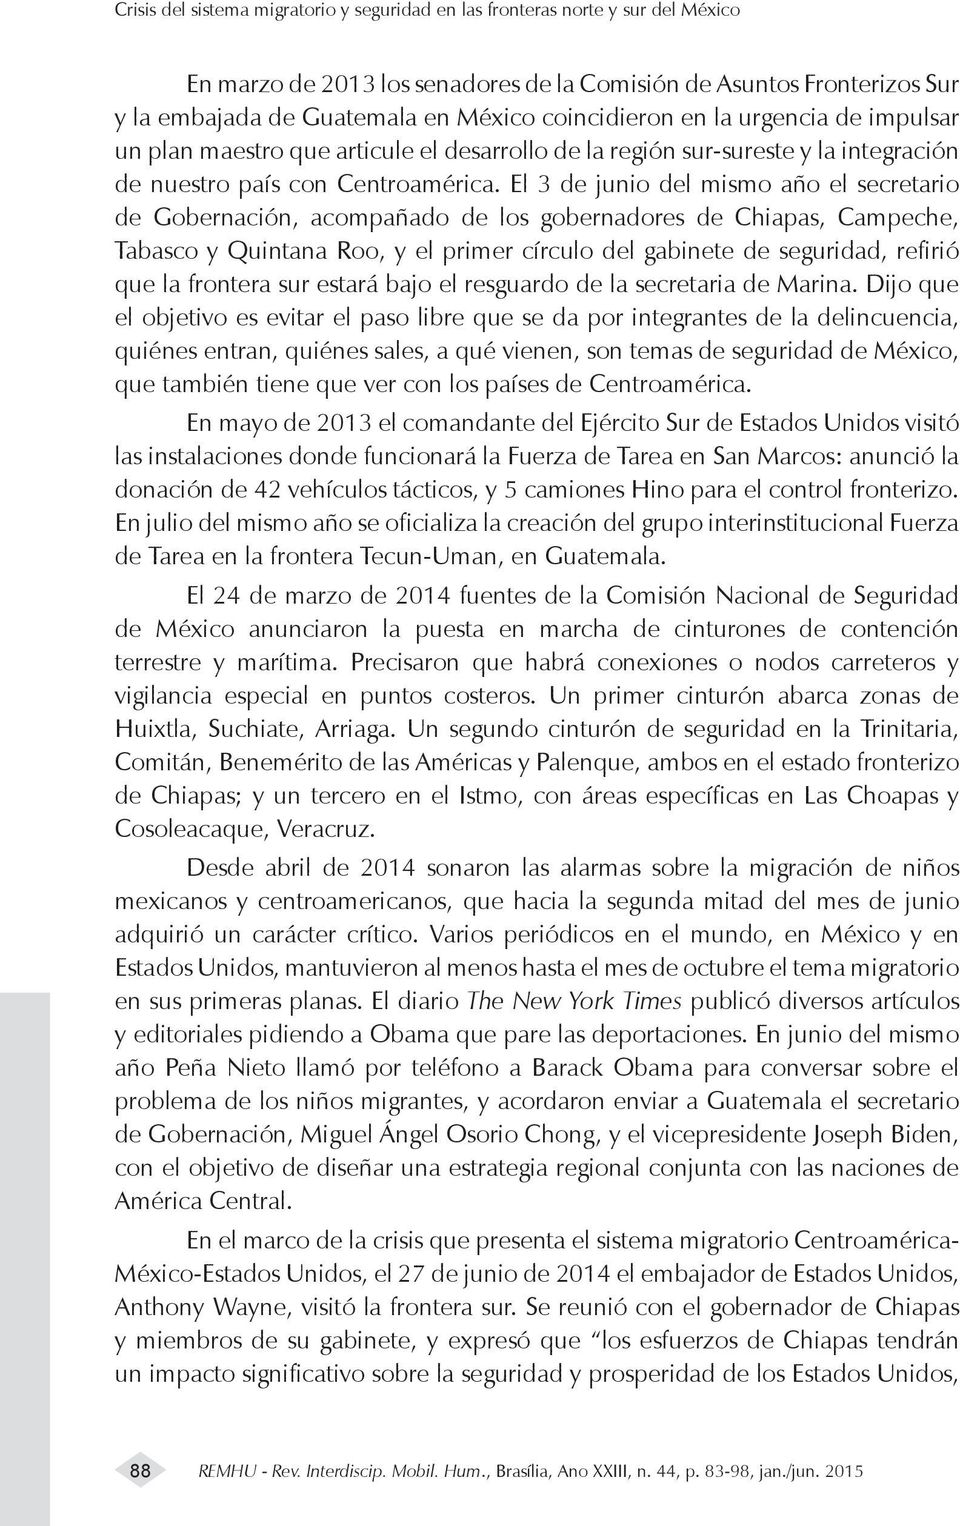 El 3 de junio del mismo año el secretario de Gobernación, acompañado de los gobernadores de Chiapas, Campeche, Tabasco y Quintana Roo, y el primer círculo del gabinete de seguridad, refirió que la